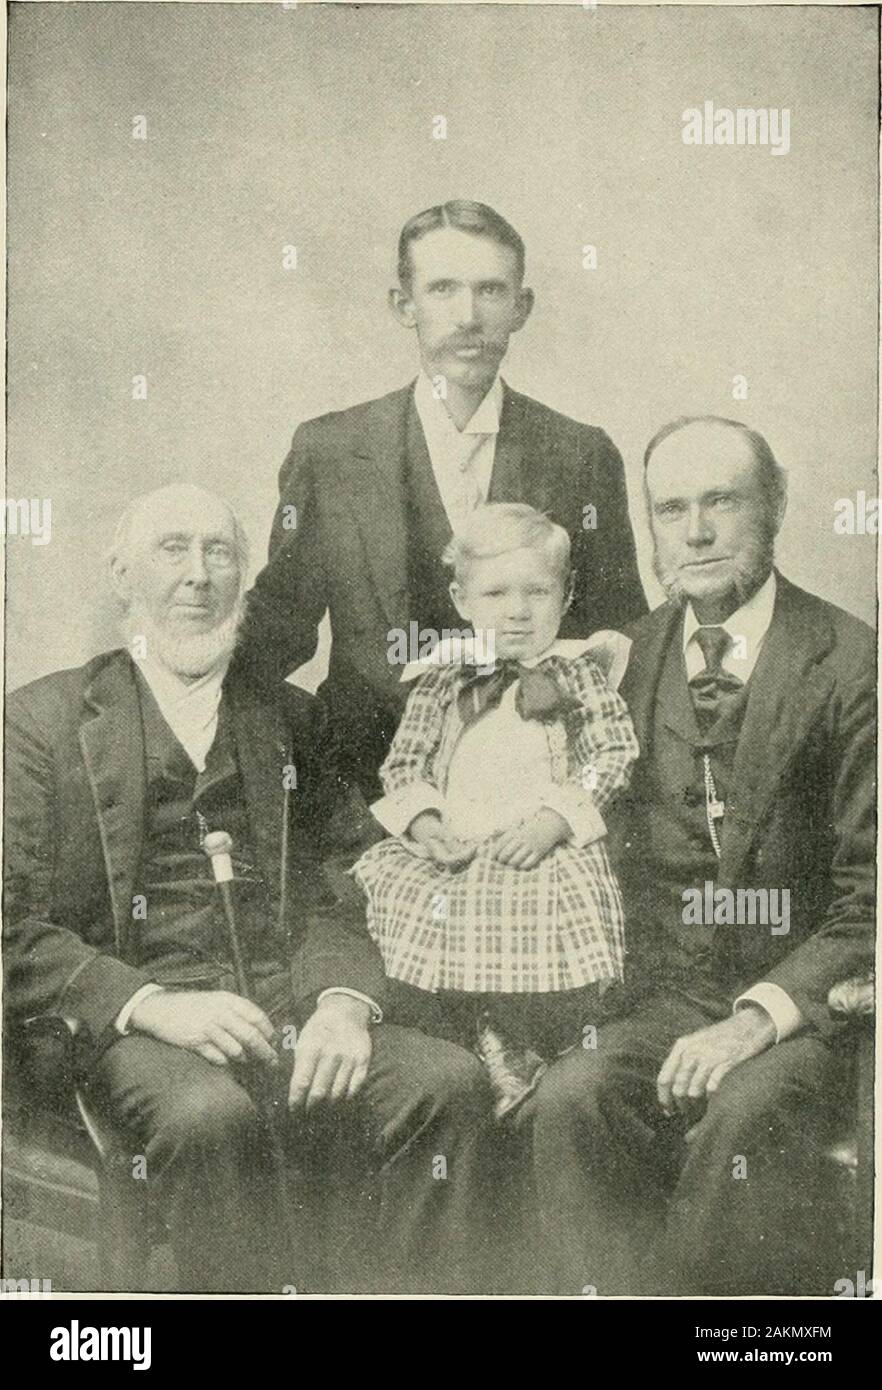 La famiglia Greene e i suoi rami da A.D861 a A.D1904 . Il sito UF MI HA 01 1 IV II X-KIXG HOME, dove GEOROE KIX(t W -VS Data di nascita. Quattro generazioni di una famiglia Whipple Re, b. Giugno 9, 1813 ; J. W. P. re del suo figlio, b. Febbraio 24, 1847 ; George W. RE, nipote, b. 19 maggio 1867, e George W. RE, Jr., pronipote, b. Feb. 25,1899. RECTT 6reene JTamii^^ Giuseppe portò il suo padre Giacobbe davanti al faraone. Come che liauglity re lookedupon che testa, sbocciato bianco con il tempo, e vide il suo venerato count-enance, egli è stato spostato e detto, come vecchia sei tu? Non vi è infatti agracious vecchiaia che Foto Stock